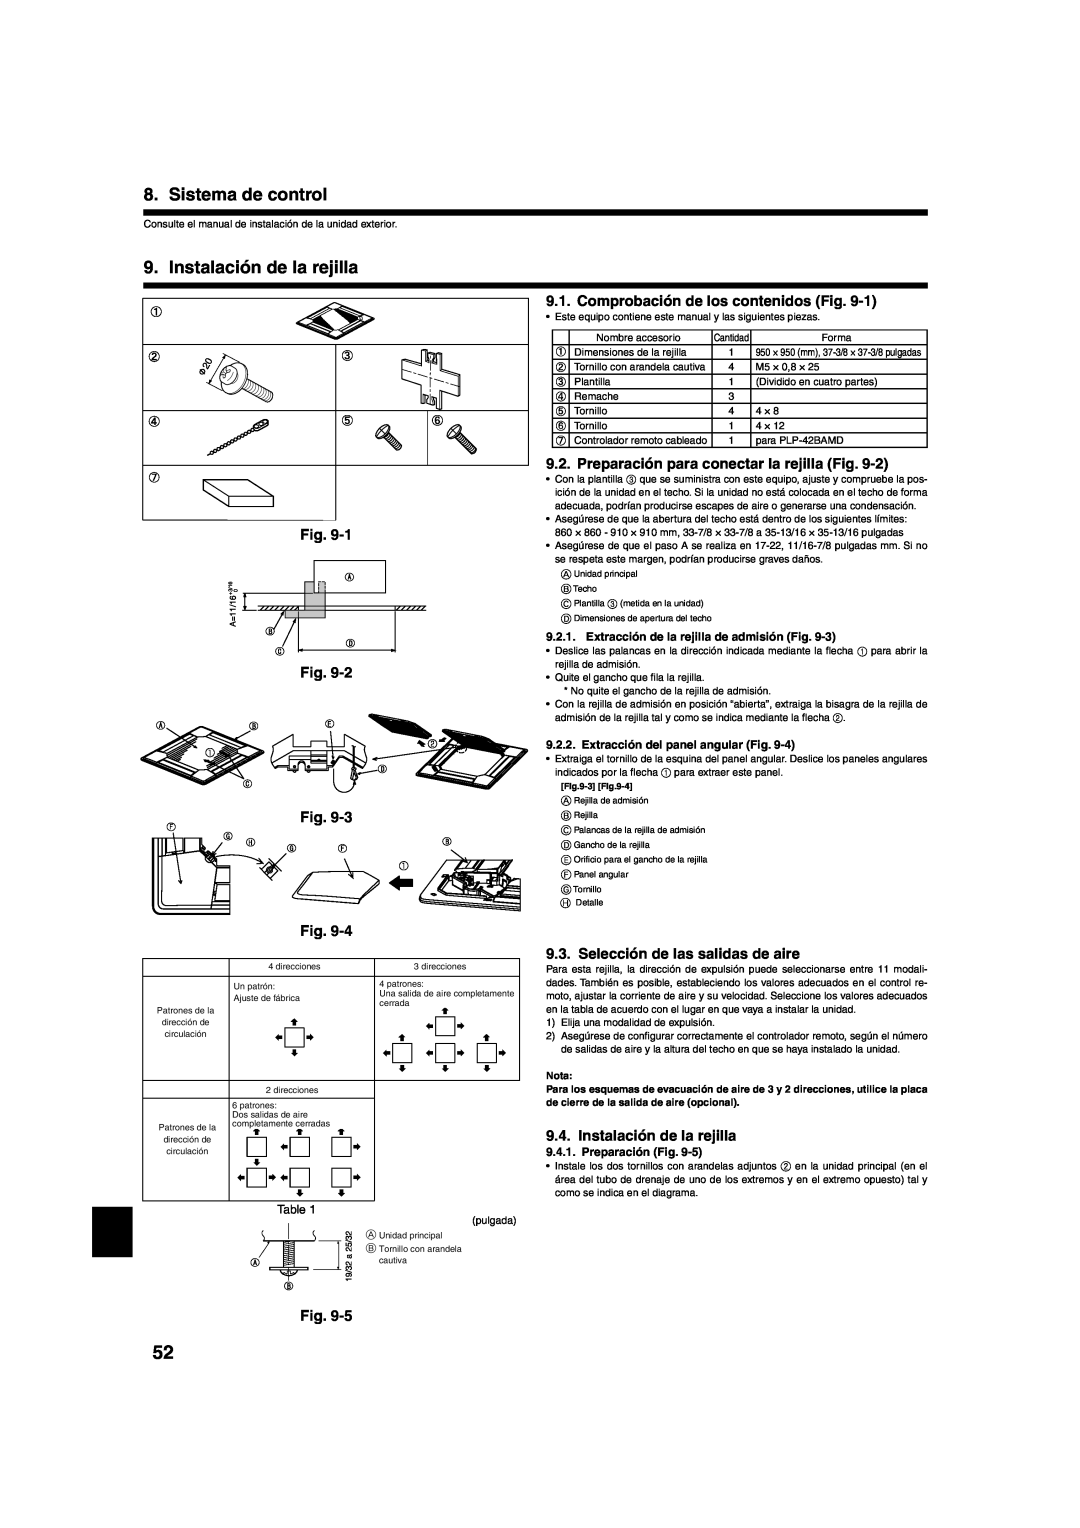 Mitsumi electronic PLA-ABA Sistema de control, Instalación de la rejilla, Fig. Fig. Fig, Selección de las salidas de aire 